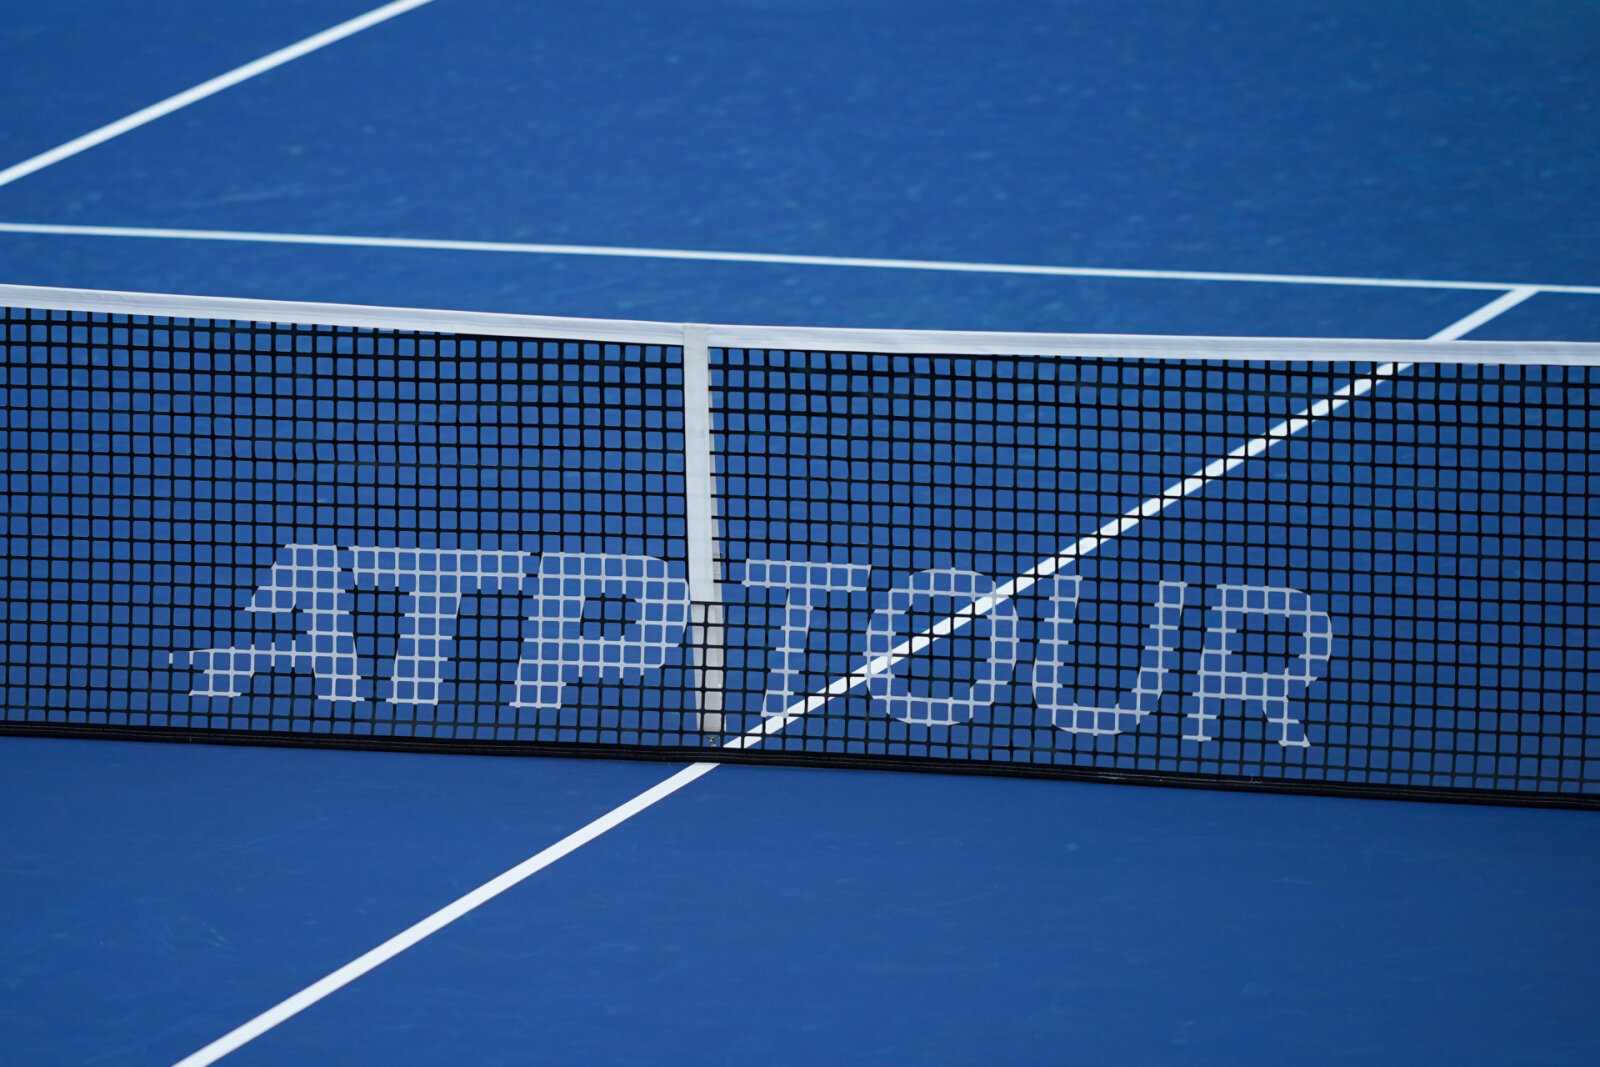 Le président de l'ATP annonce des mises à jour intéressantes pour le tournoi de tennis masculin dans le cadre de son plan stratégique